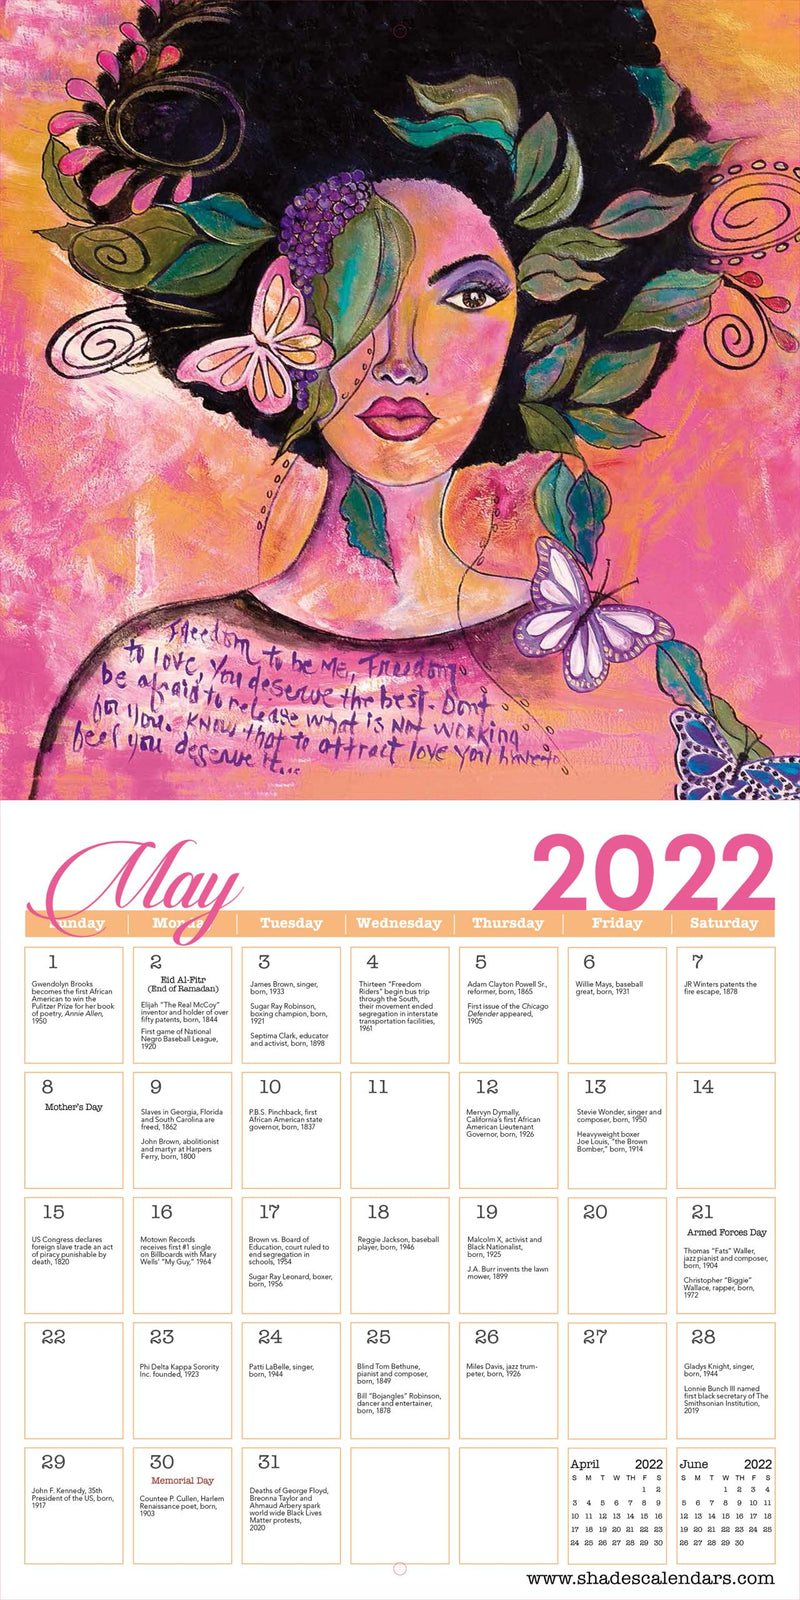 2022 I AM - GBABY African American Calendar